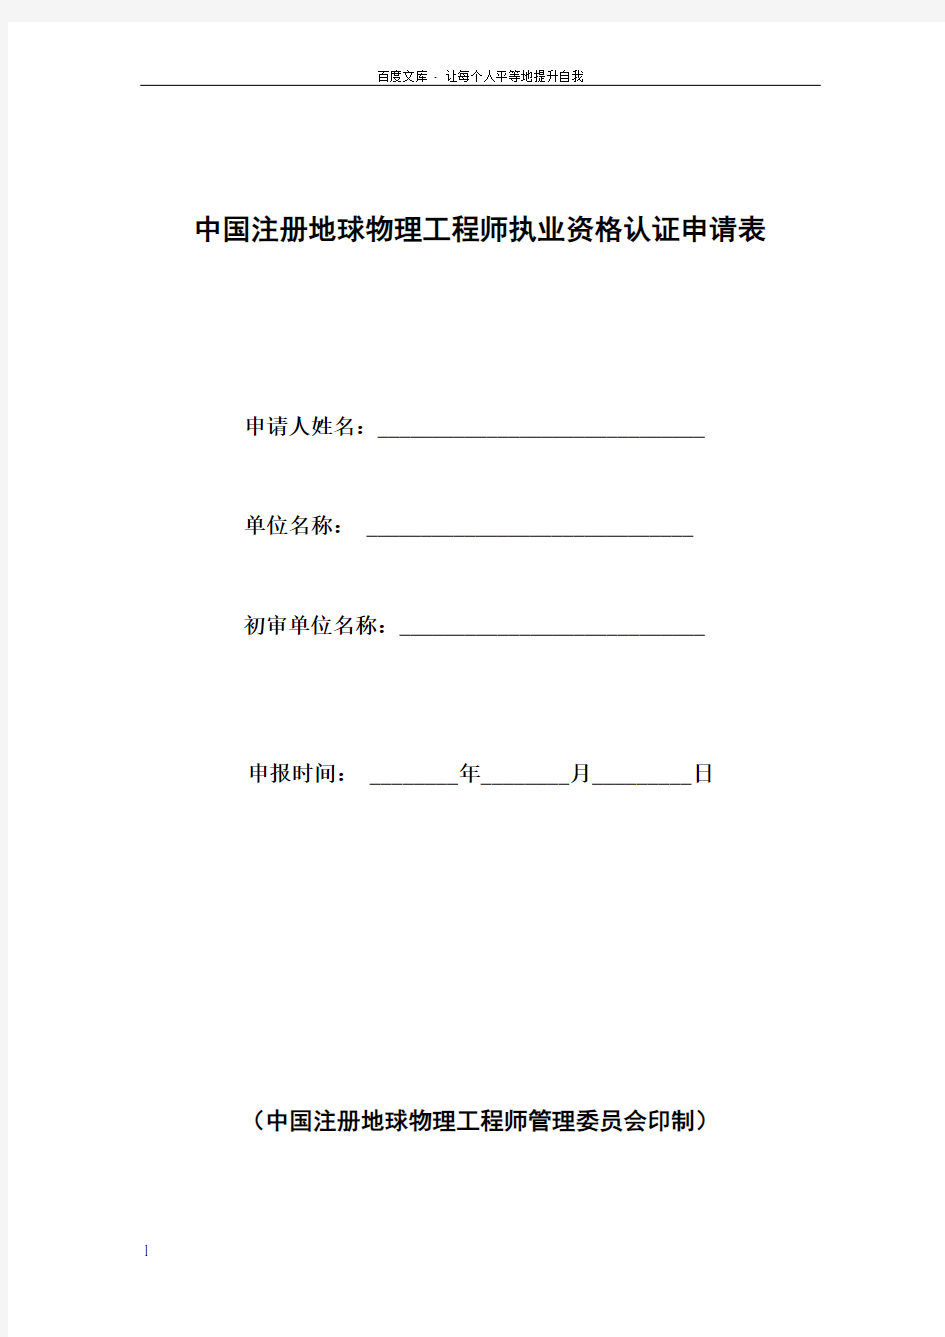 中国注册地球物理工程师执业资格认证申请表